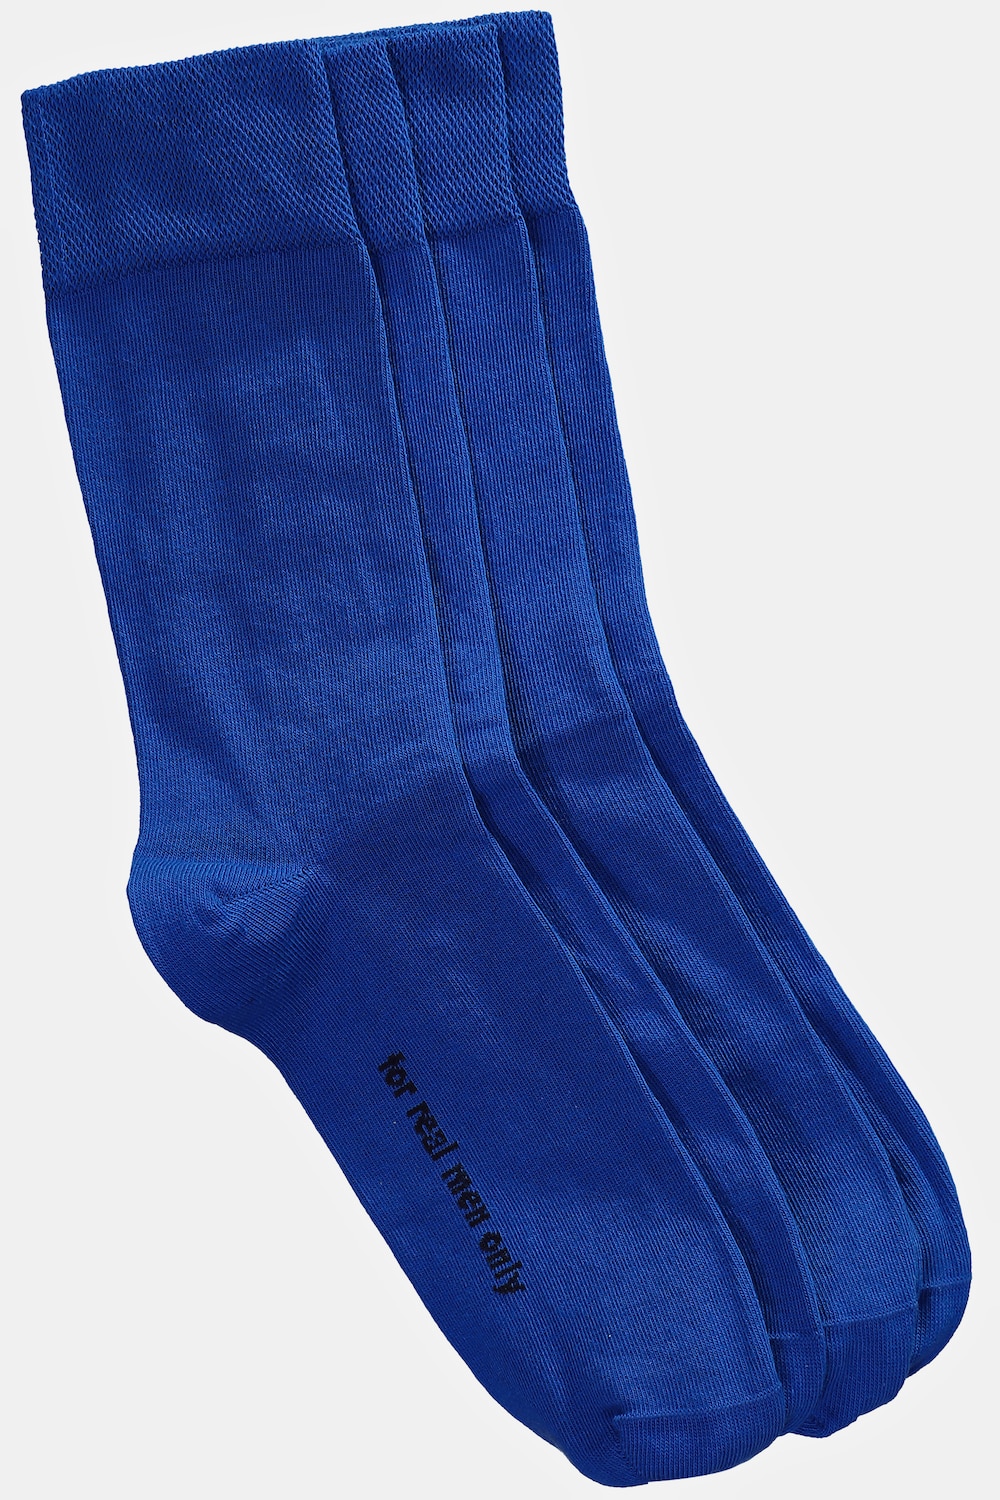 Große Größen Socken, Herren, blau, Größe: 47-50, Baumwolle/Synthetische Fasern, JP1880 von JP1880